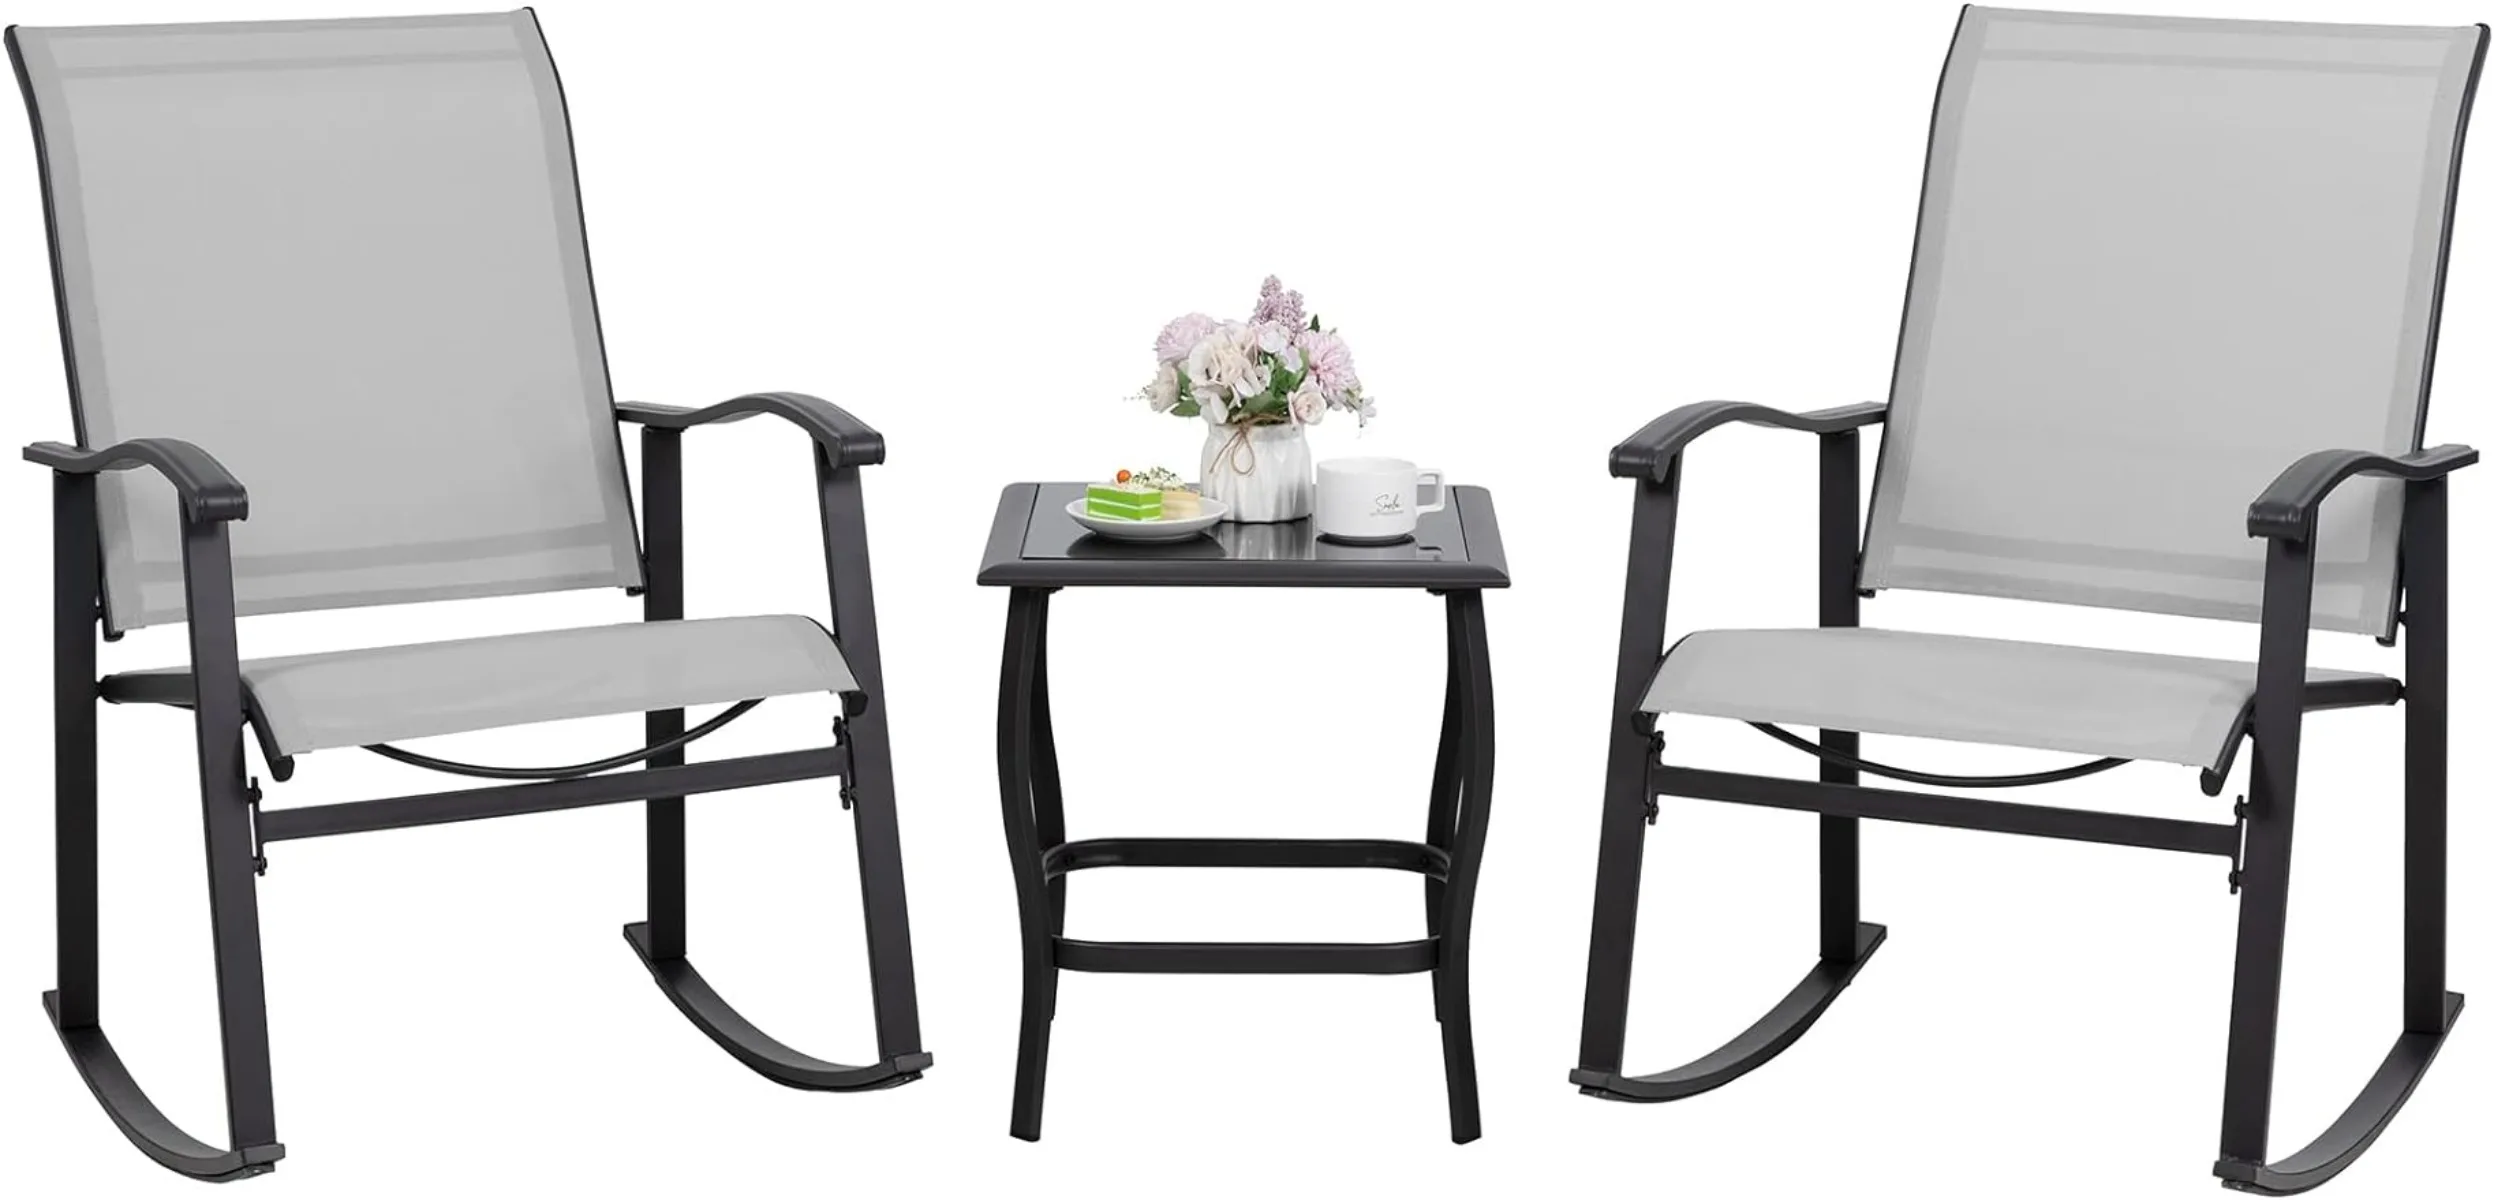 

Комплект для бистро-качалки Shintenchi из 3 предметов, уличная мебель со стульями-качалками и стеклянным журнальным столиком, набор из 3 предметов, цвет серый